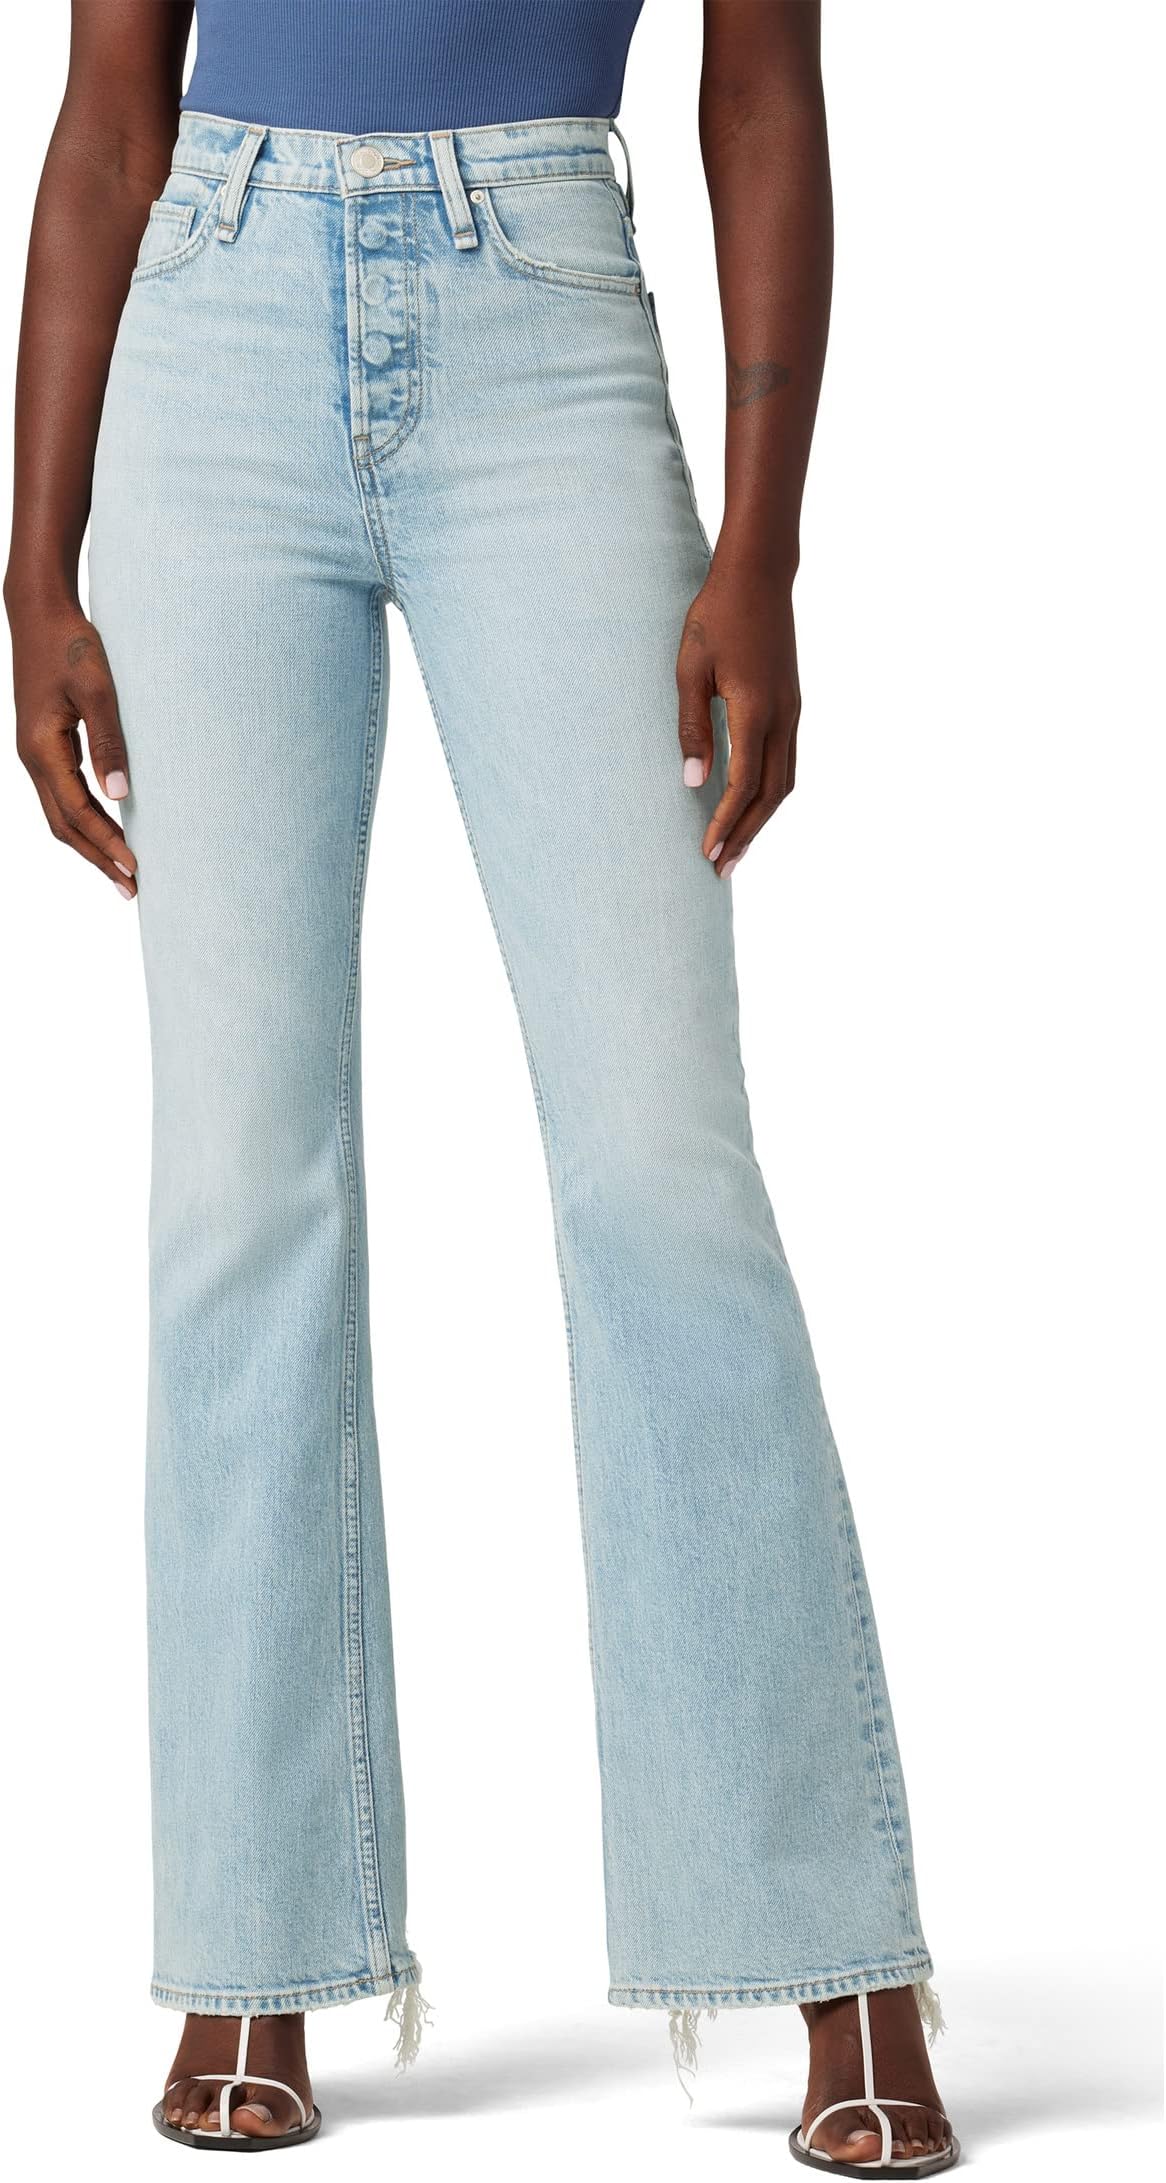 Джинсы Faye Ultra High-Rise Bootcut in Isla Hudson Jeans, цвет Isla цена и фото